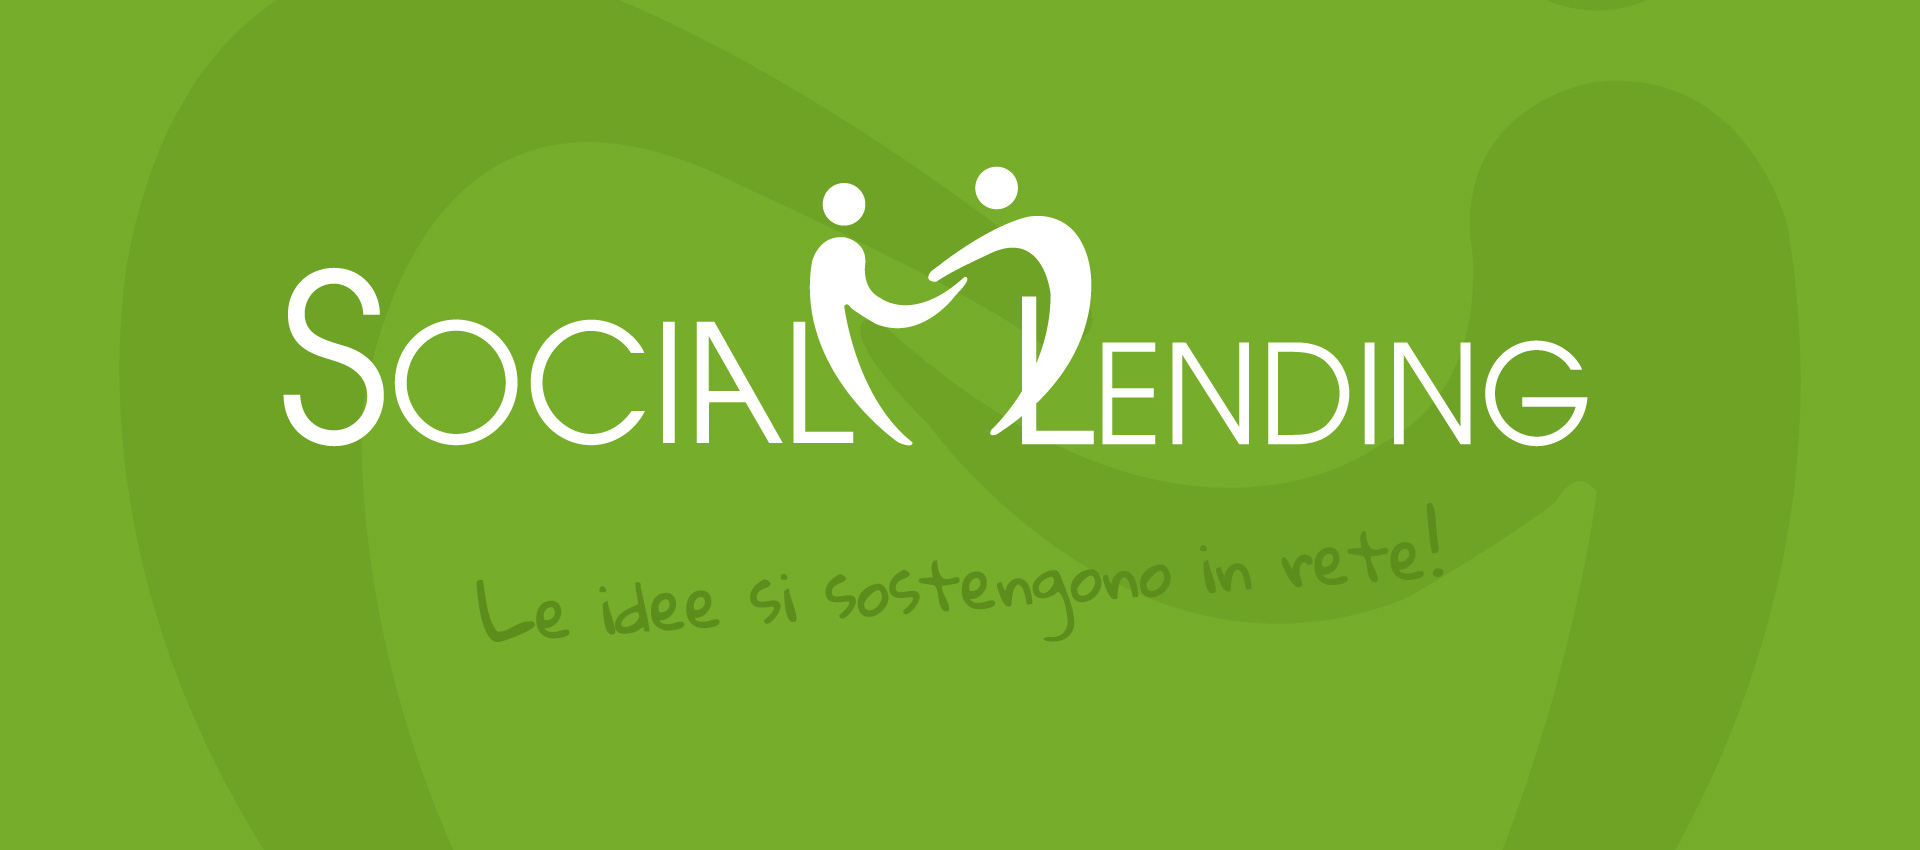 (c) Sociallendingitalia.net